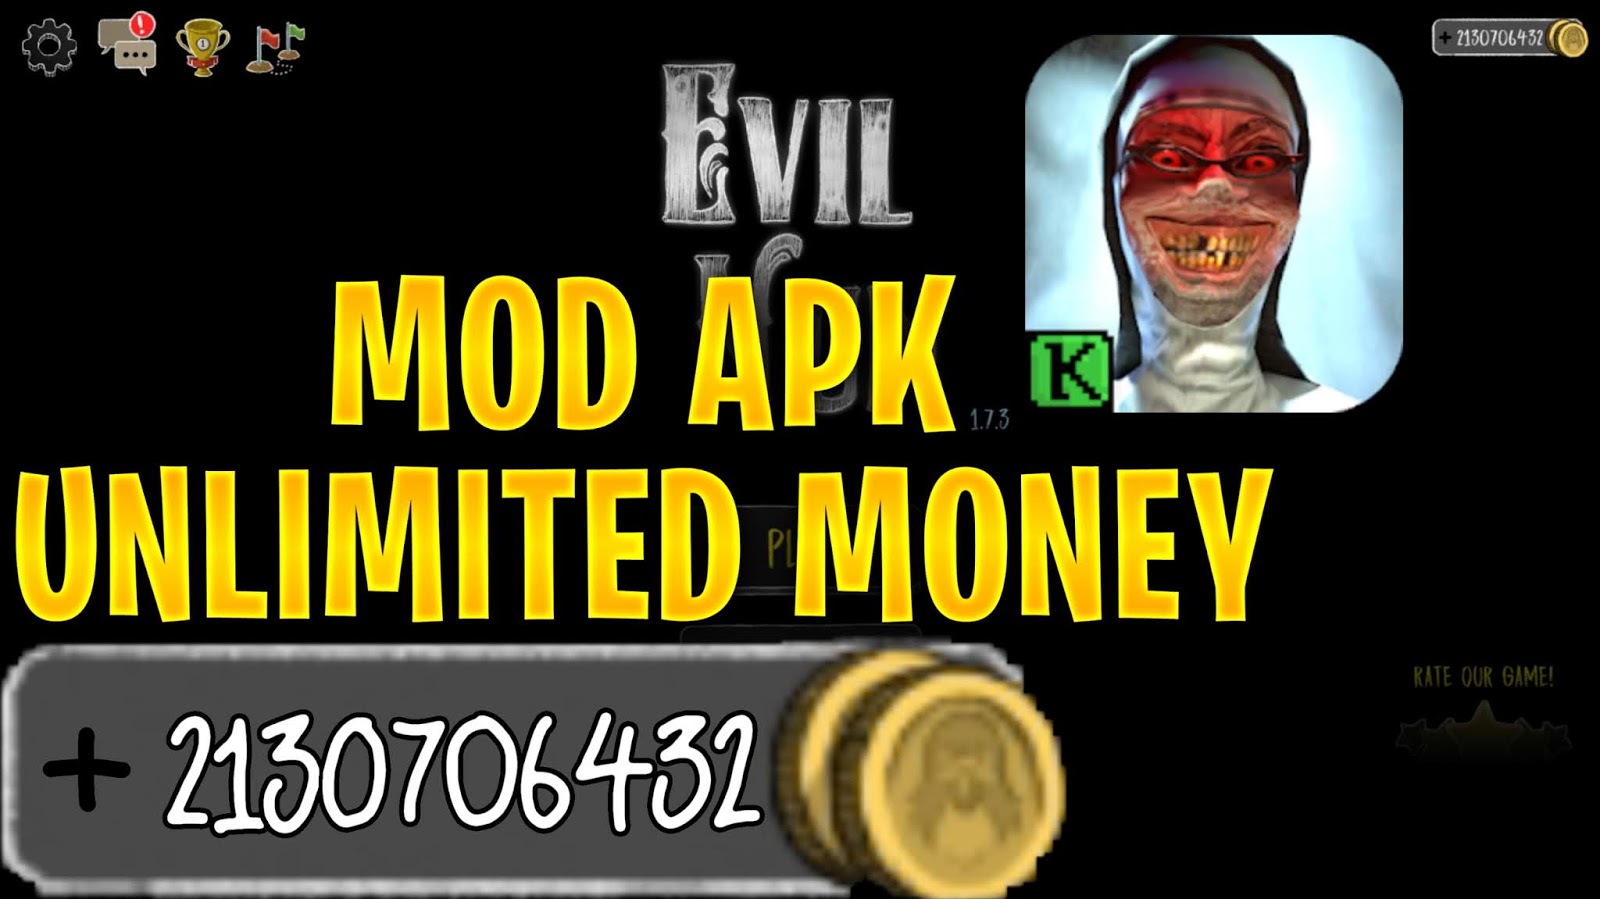 Evil Nun MOD APK 1.7.3